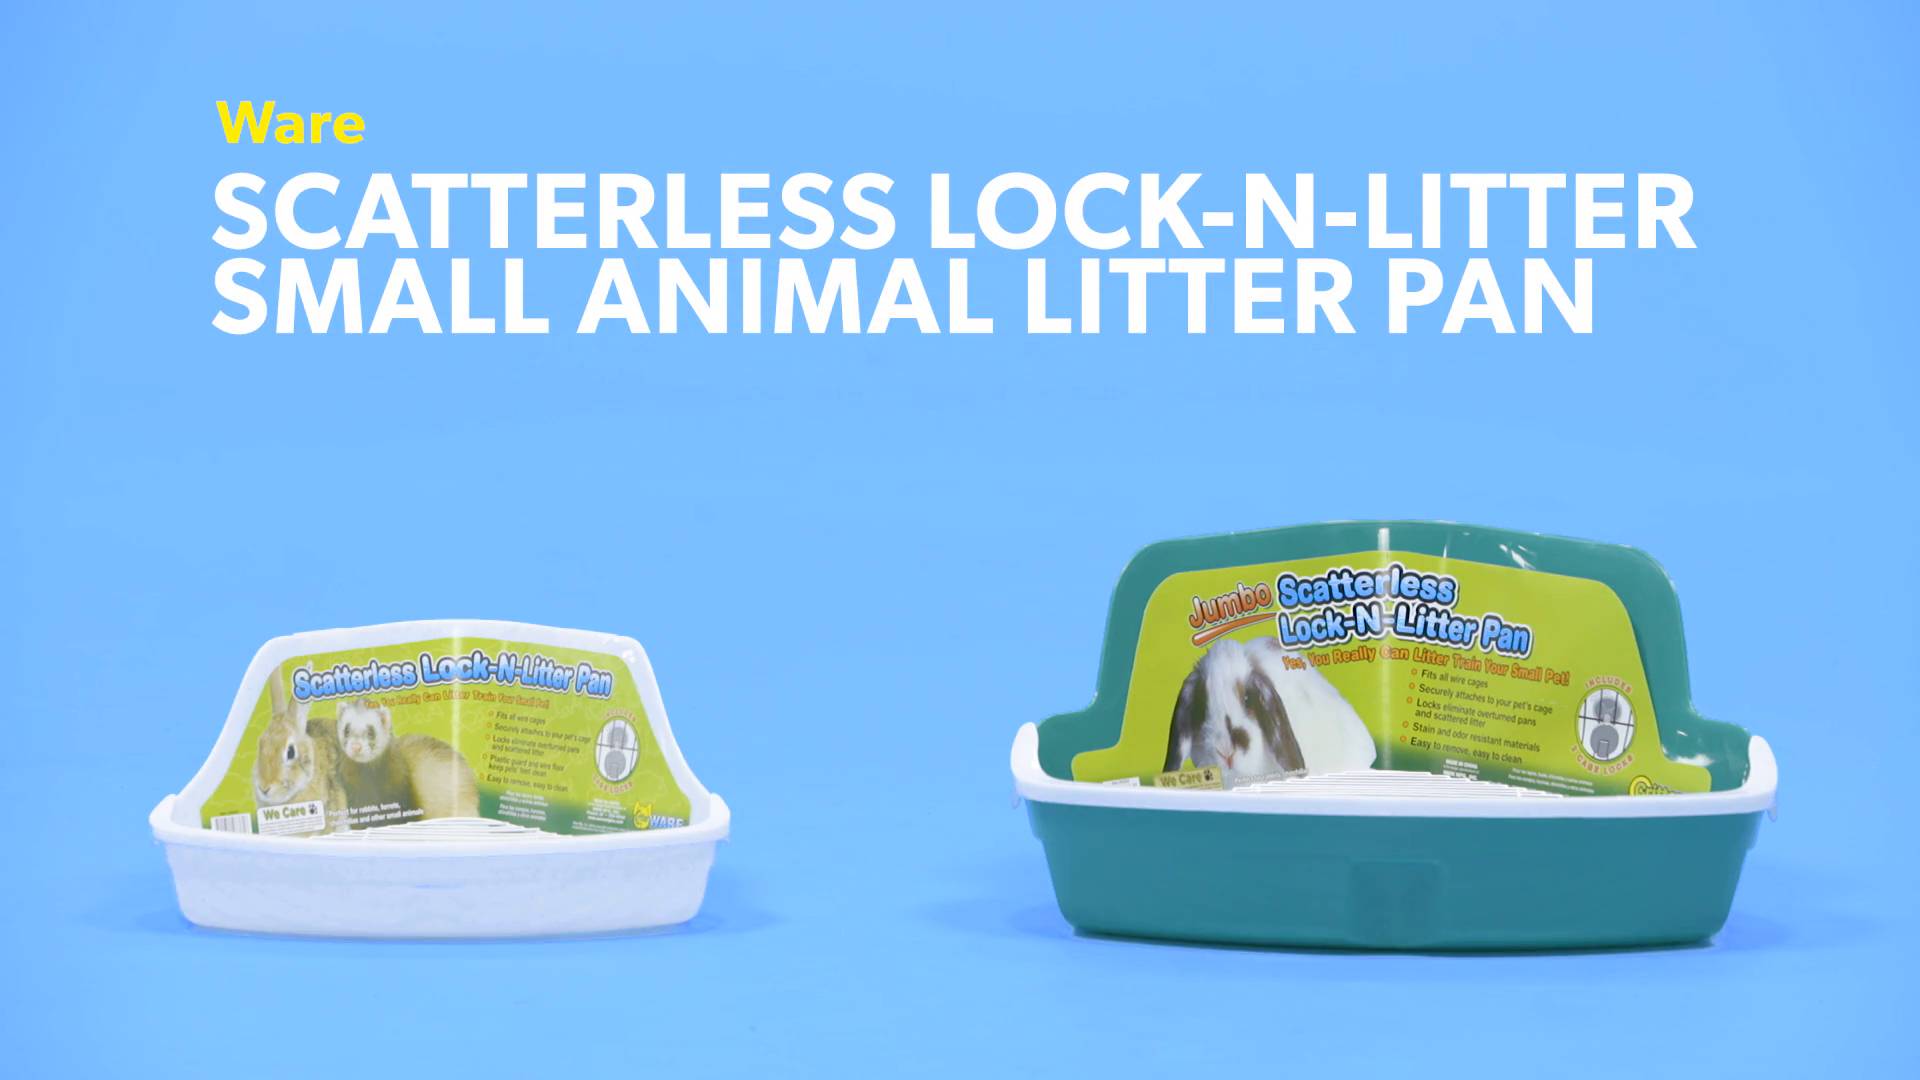 WARE Scatterless Lock-N-Litter Small Animal Litter Pan, Regular